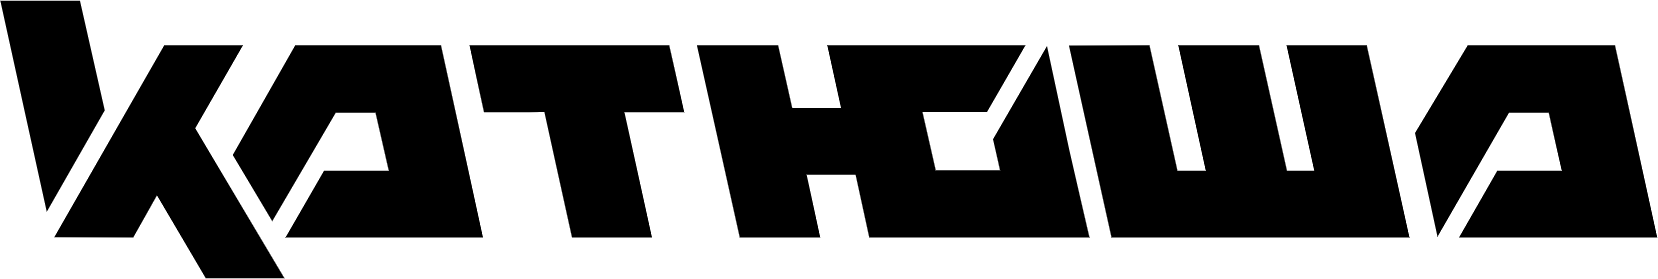 логотип катюша